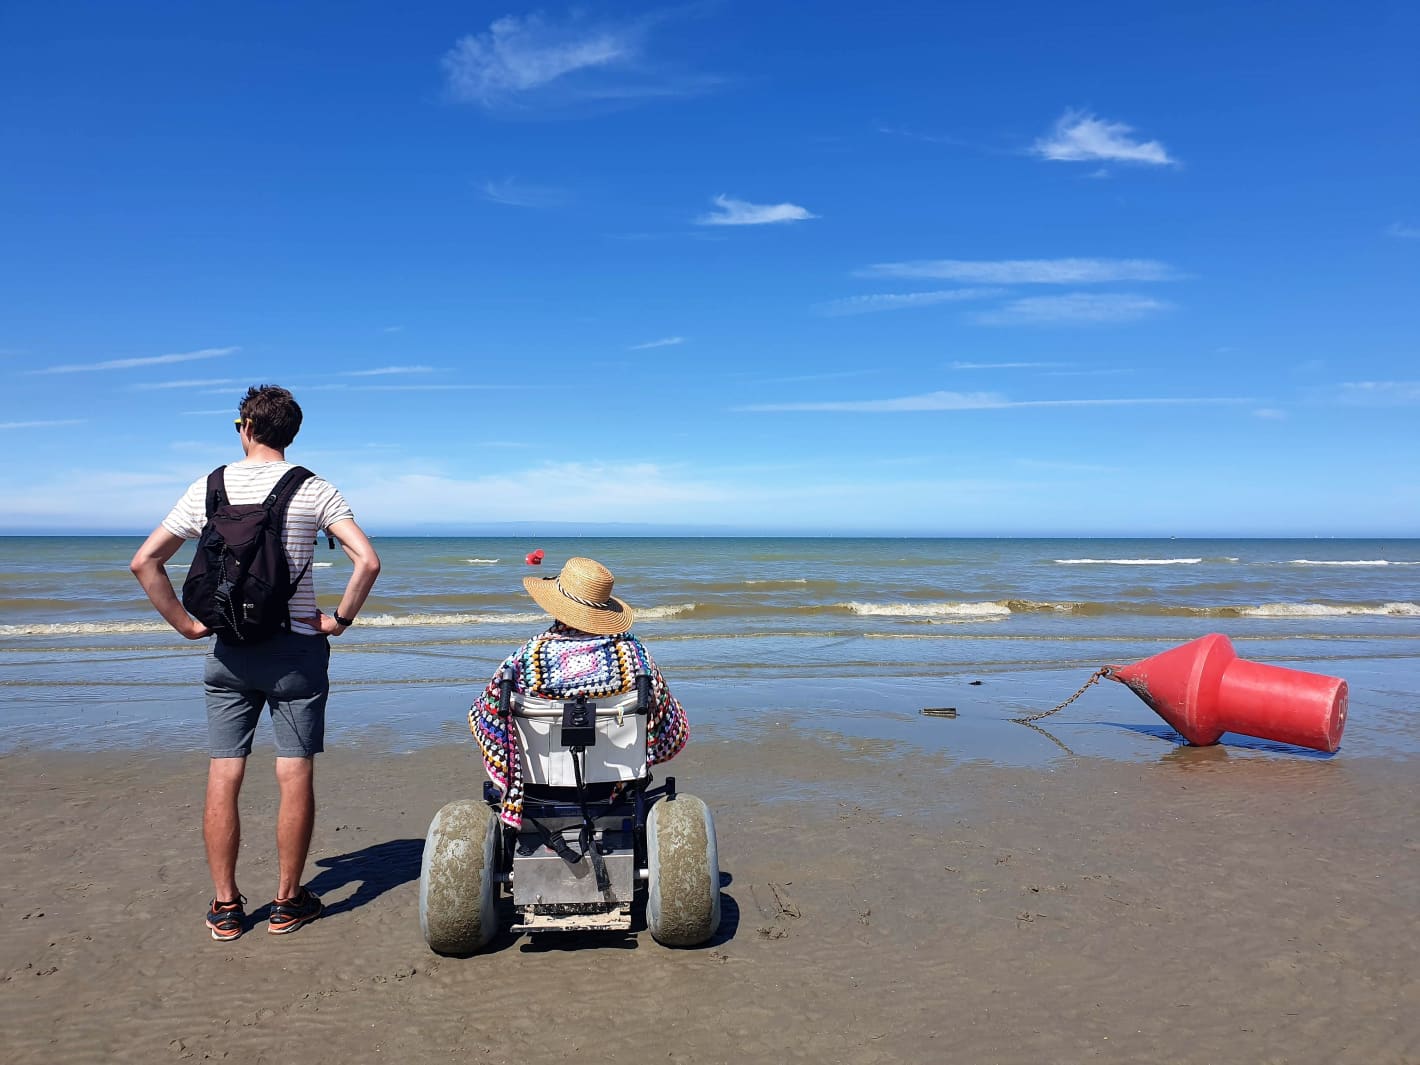 Twee personen op het strand: één staat. De andere zit in een aangepaste rolstoel met dikke banden.